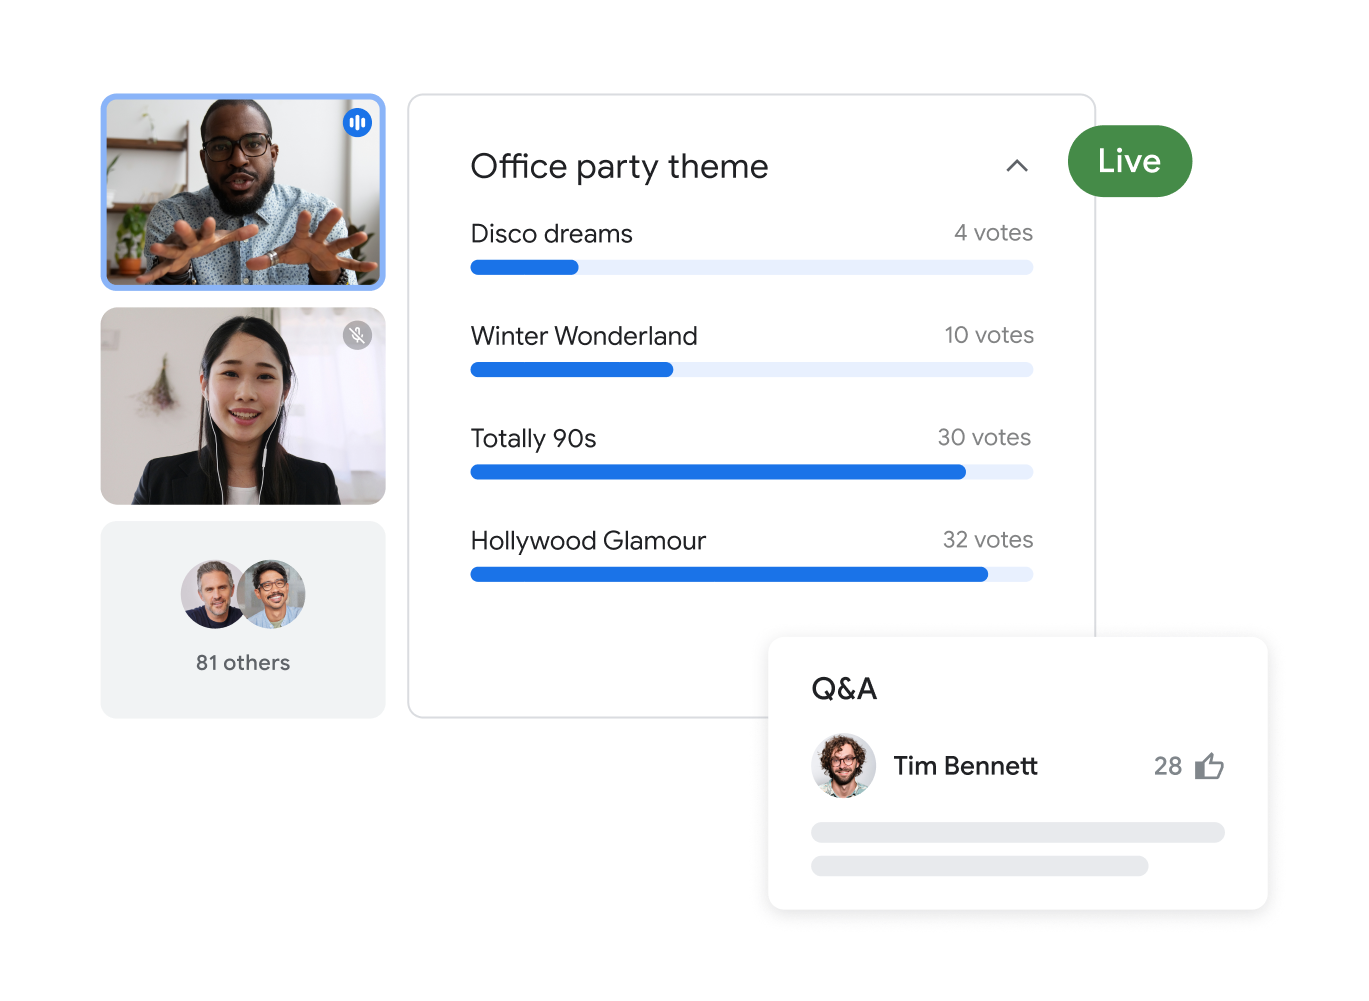 שיחה ב-Google Meet עם 83 משתתפים שמופיעים בה שני משתמשים שיש עליהם הדגשה. הם יוצרים סקר על הנושא של המסיבה במשרד, ובסקר יש תשובות.